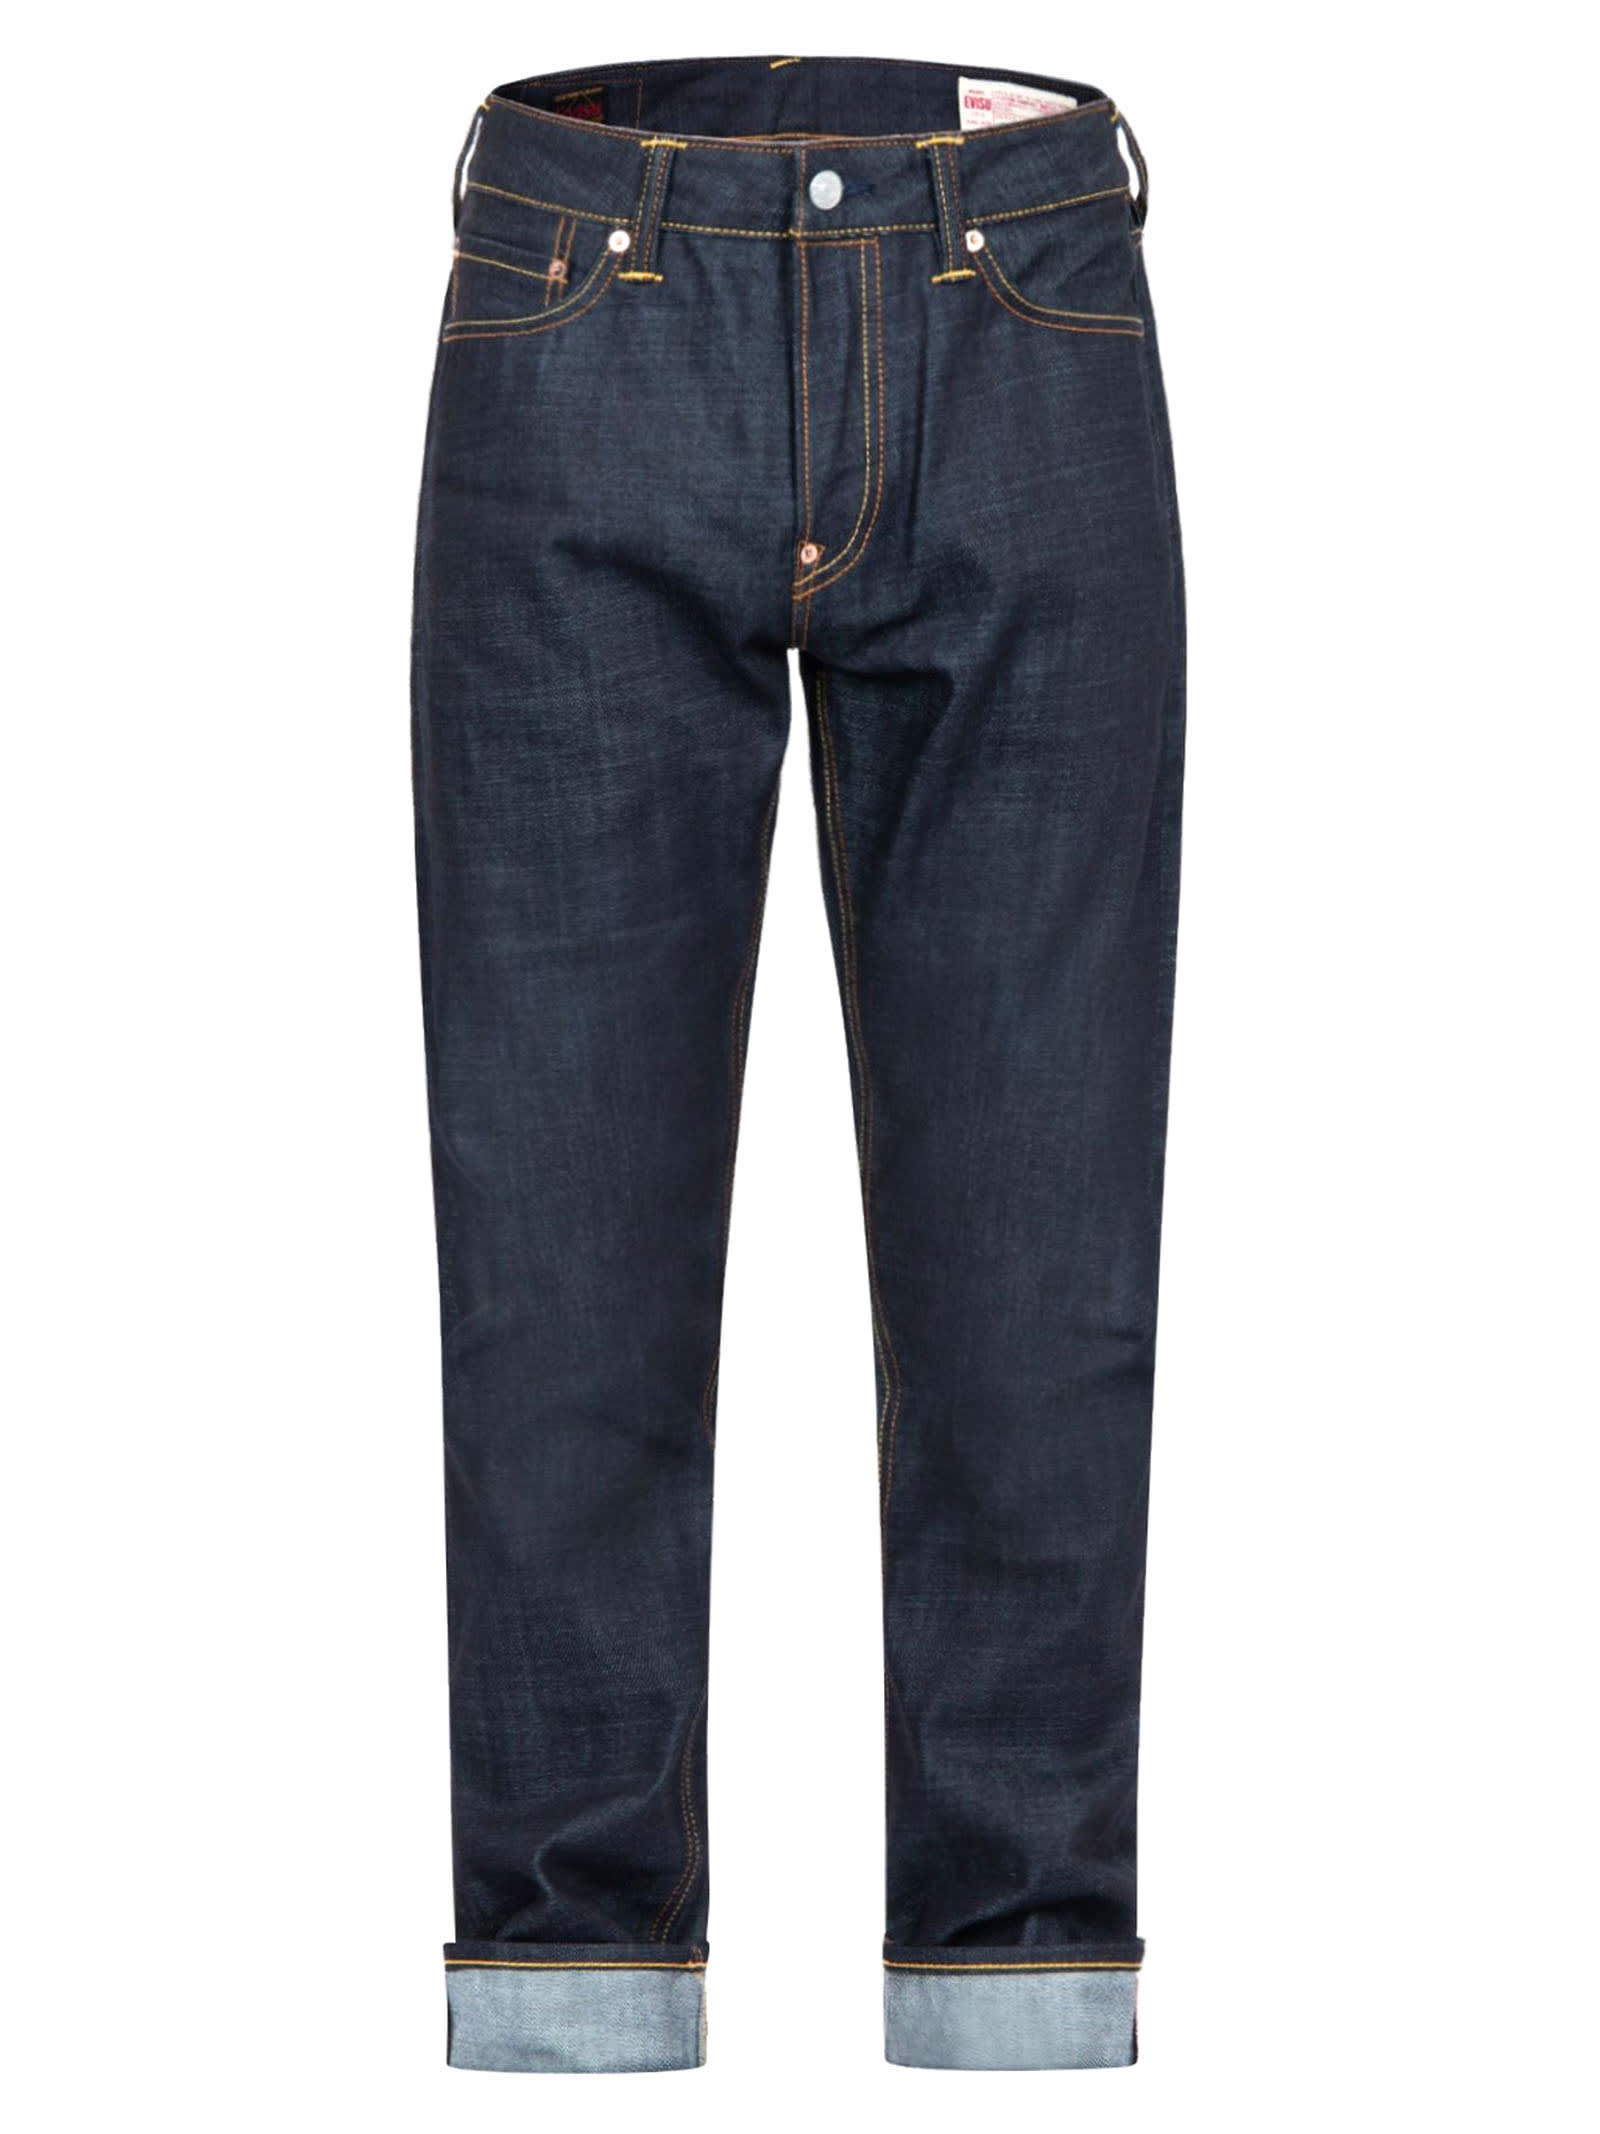 Evisu Dark Blue Cotton Denim Jeans